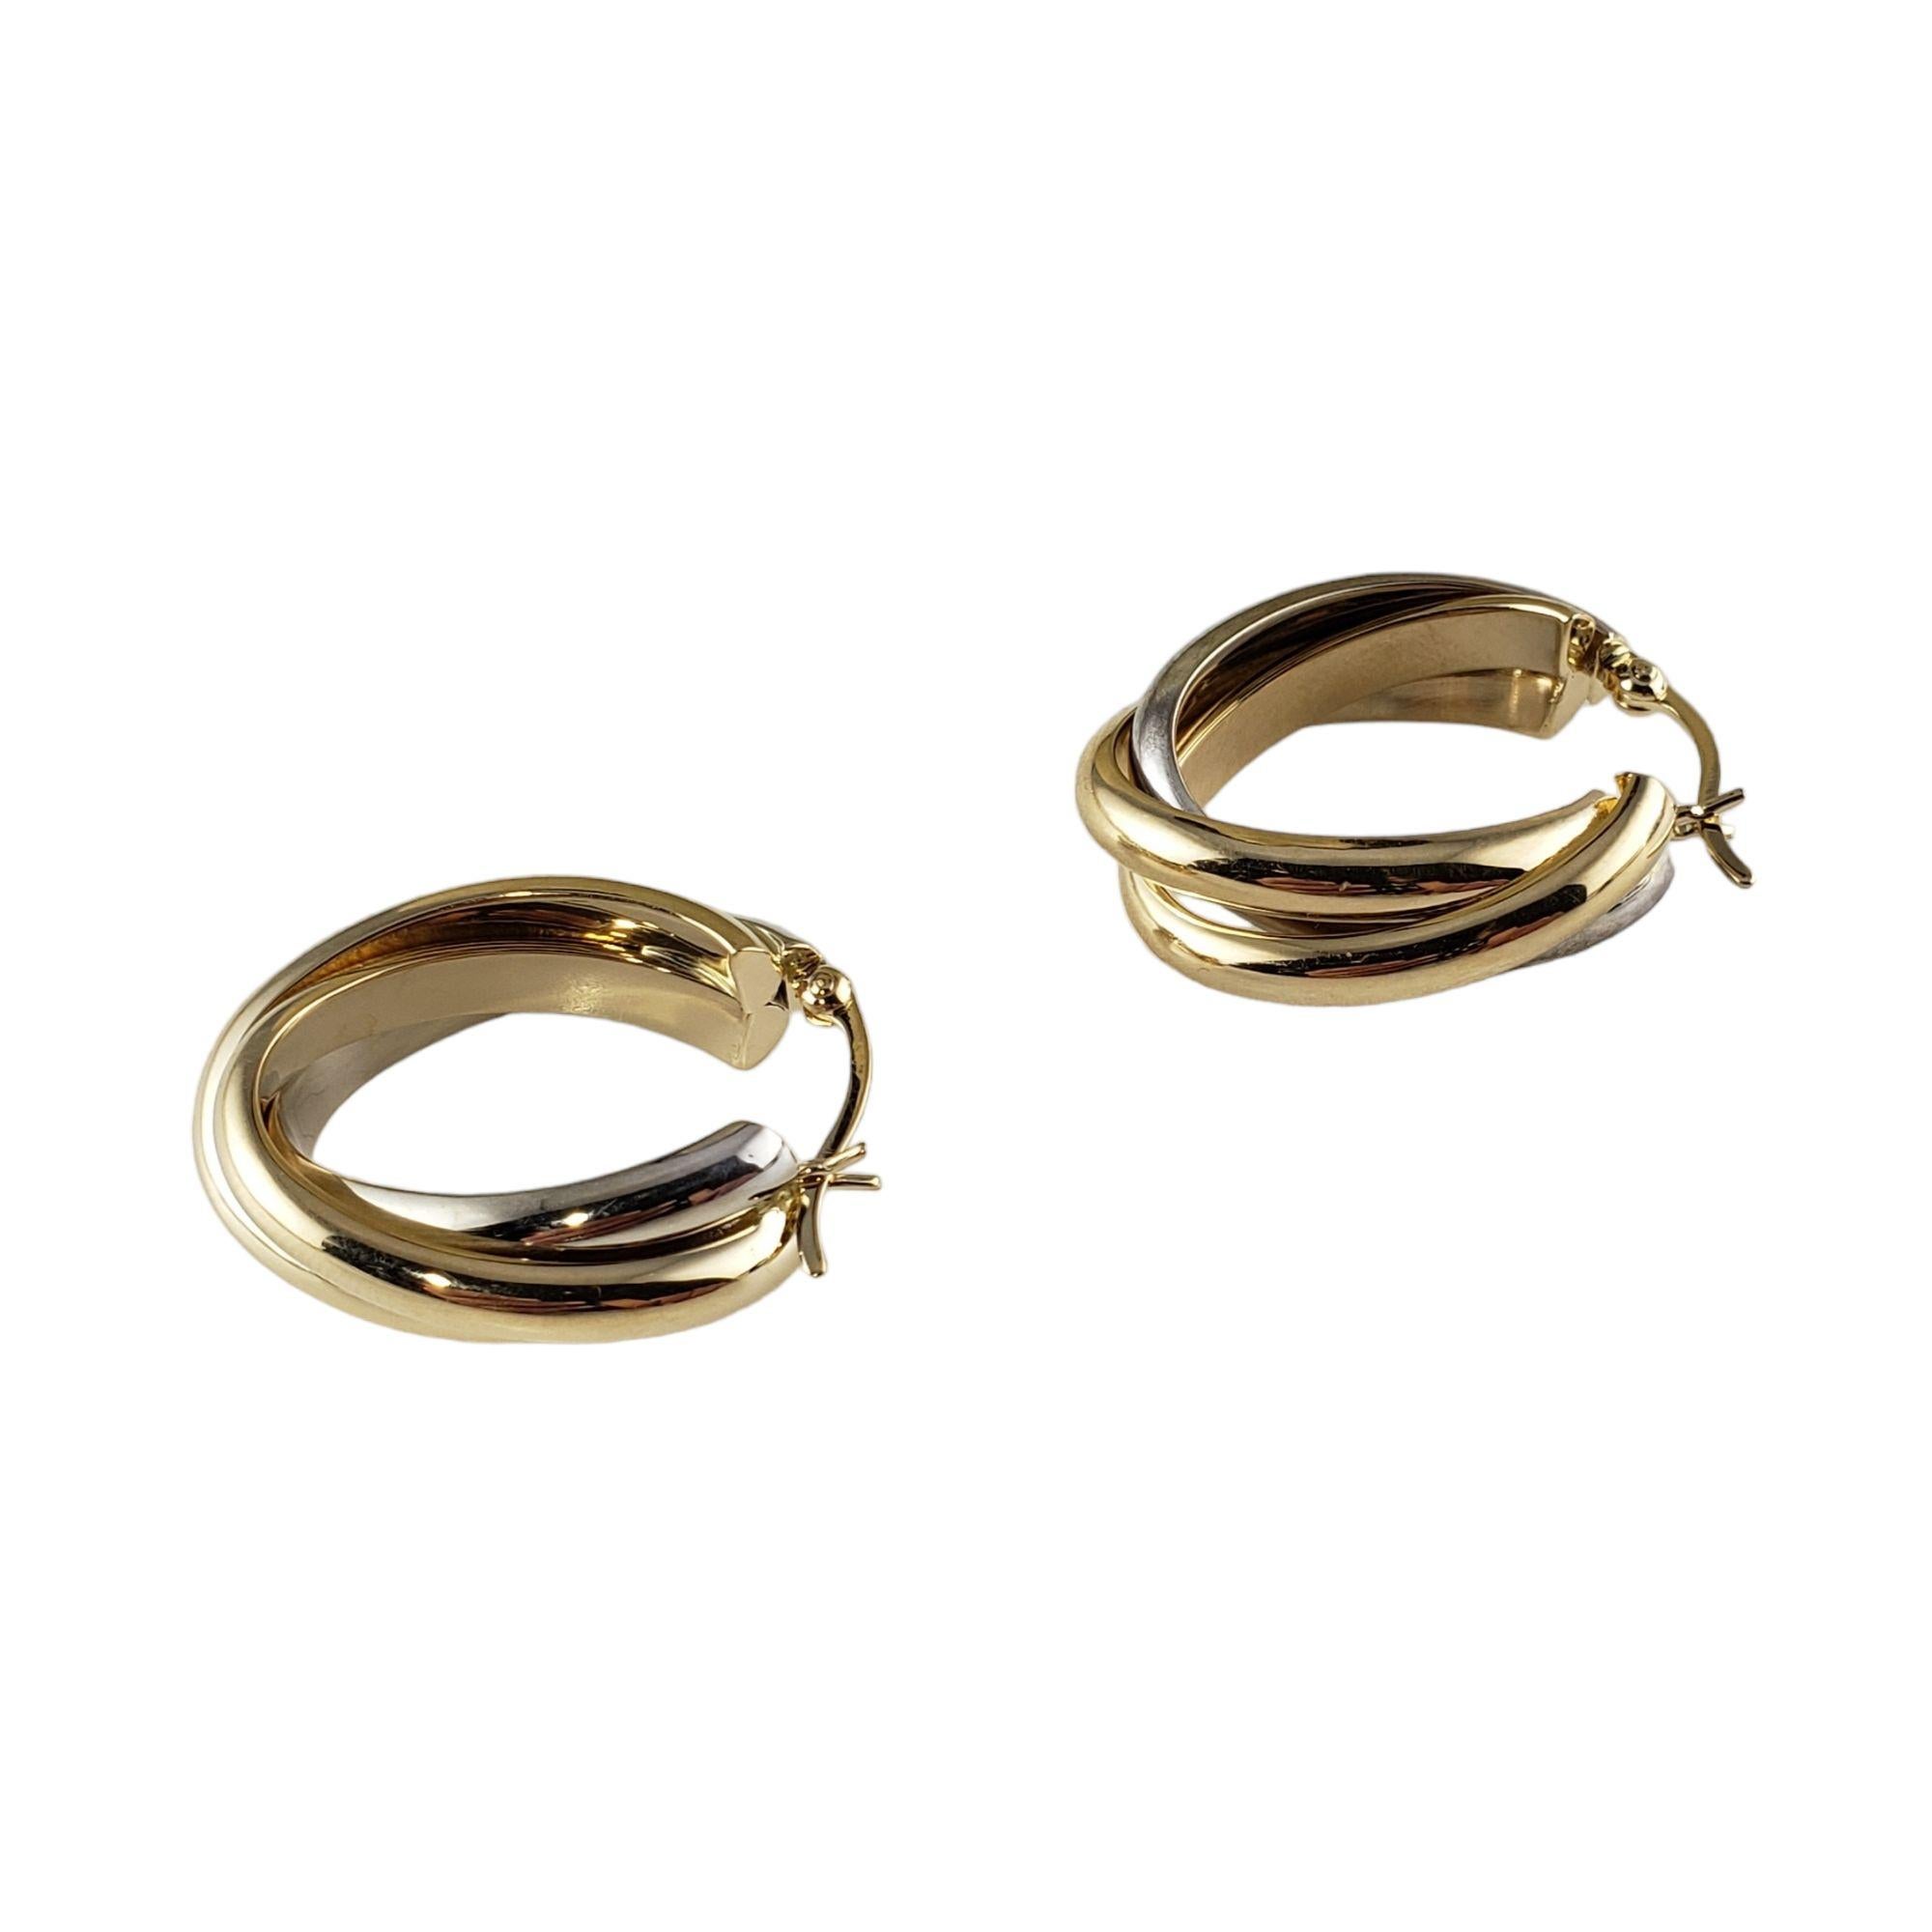 14 karat gold hoop earrings large